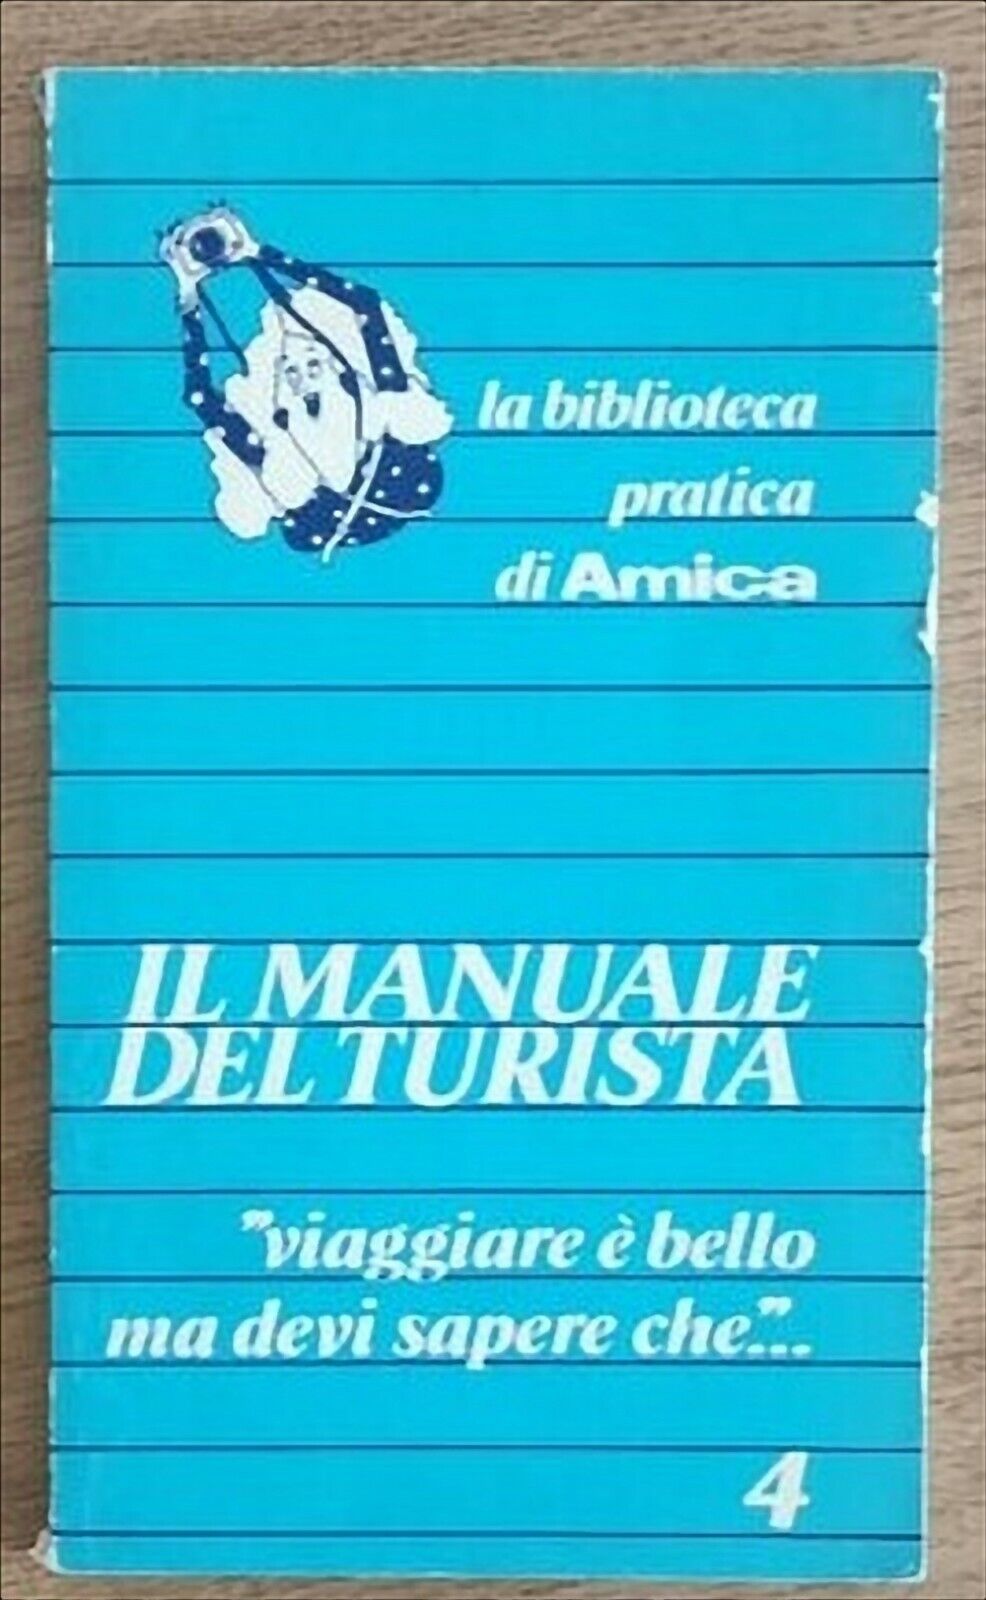 Il manuale del turista - A. Nacci - Corriere della sera - 1977 - AR